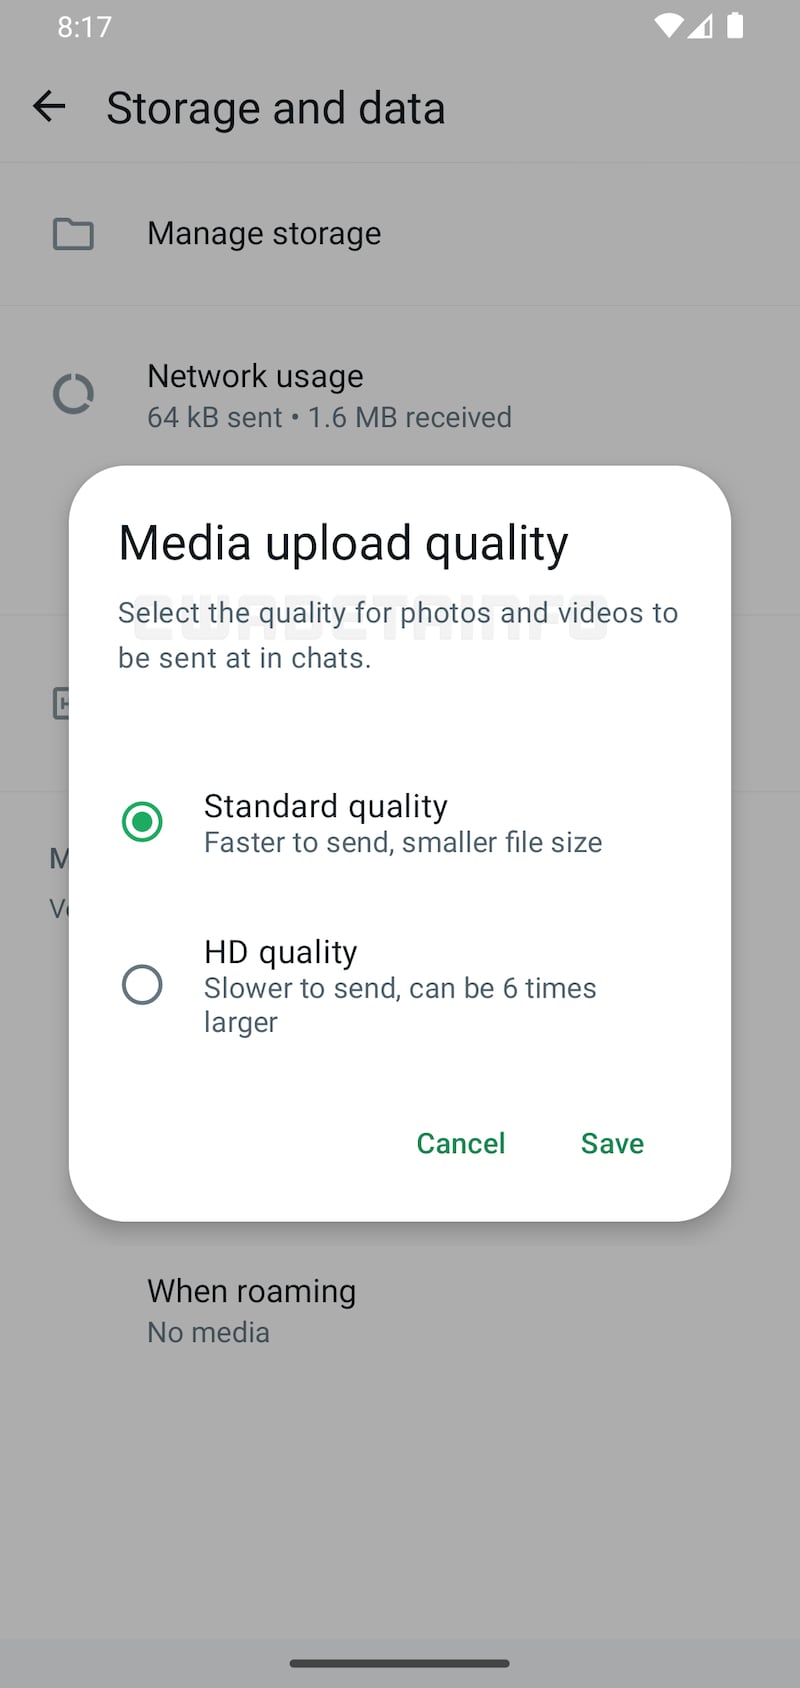 Despídete de configurar cada foto y video para que se manda en calidad HD. WhatsApp prepara una actualización necesaria pero hay un problema.